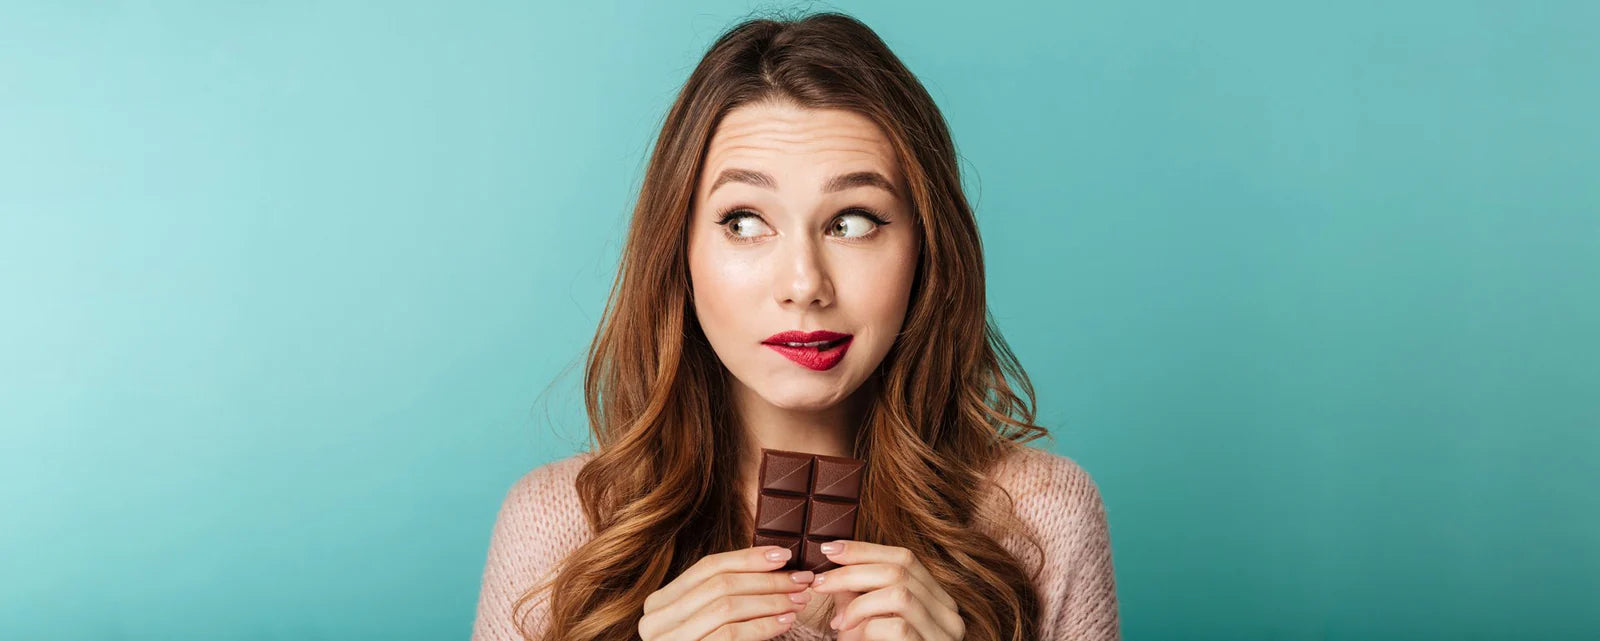 Dunkle Schokolade – wirklich gesund?